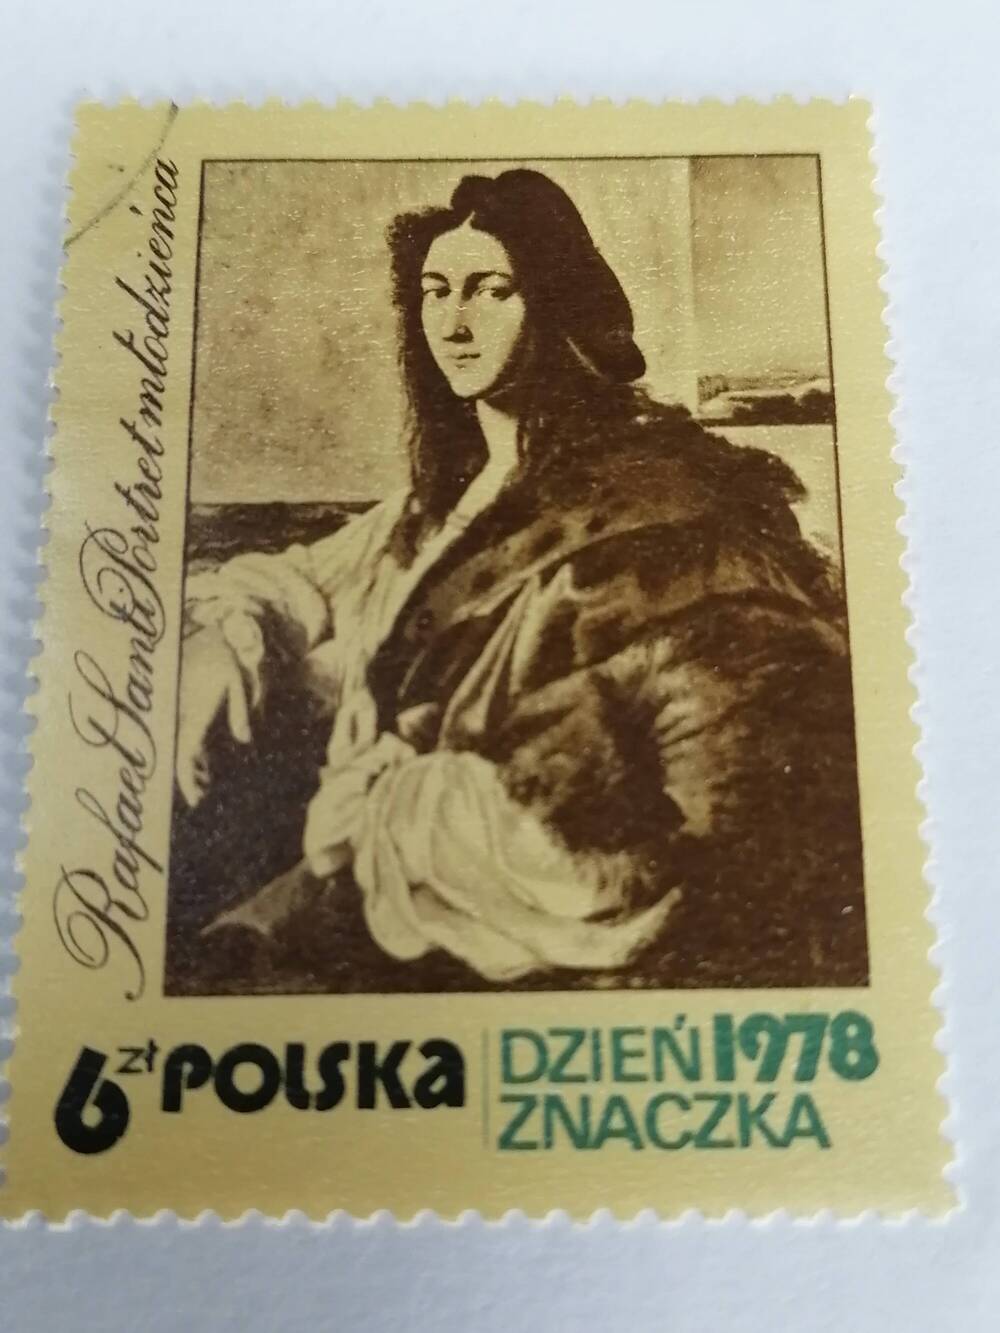 Марка почтовая негашеная, Polska,Польша,1978 г, Dzien Znaczka